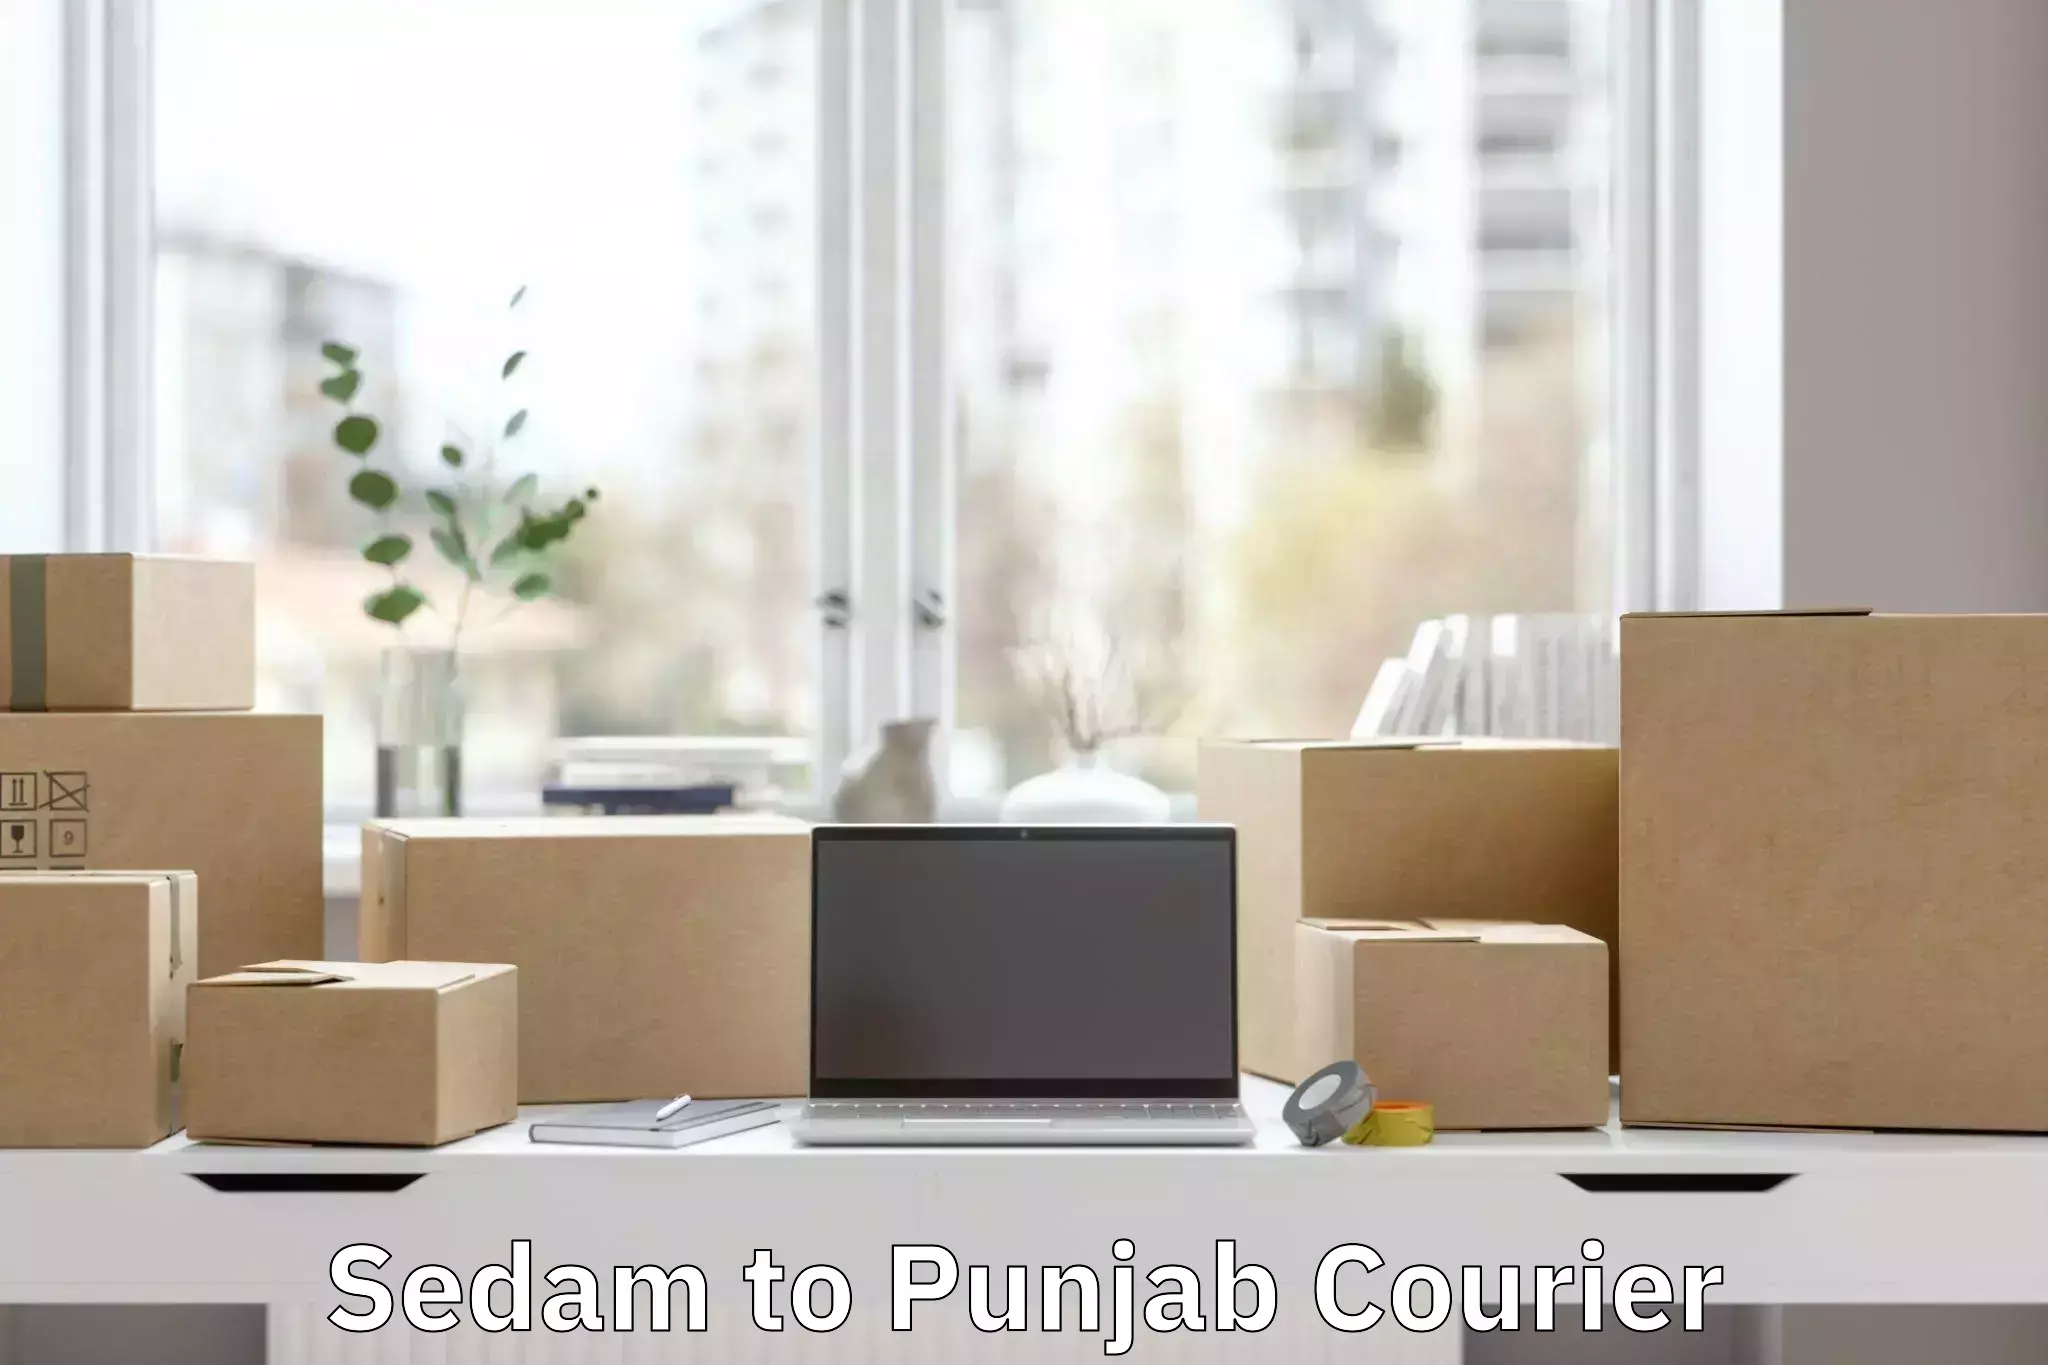 Premium luggage courier Sedam to Central University of Punjab Bathinda